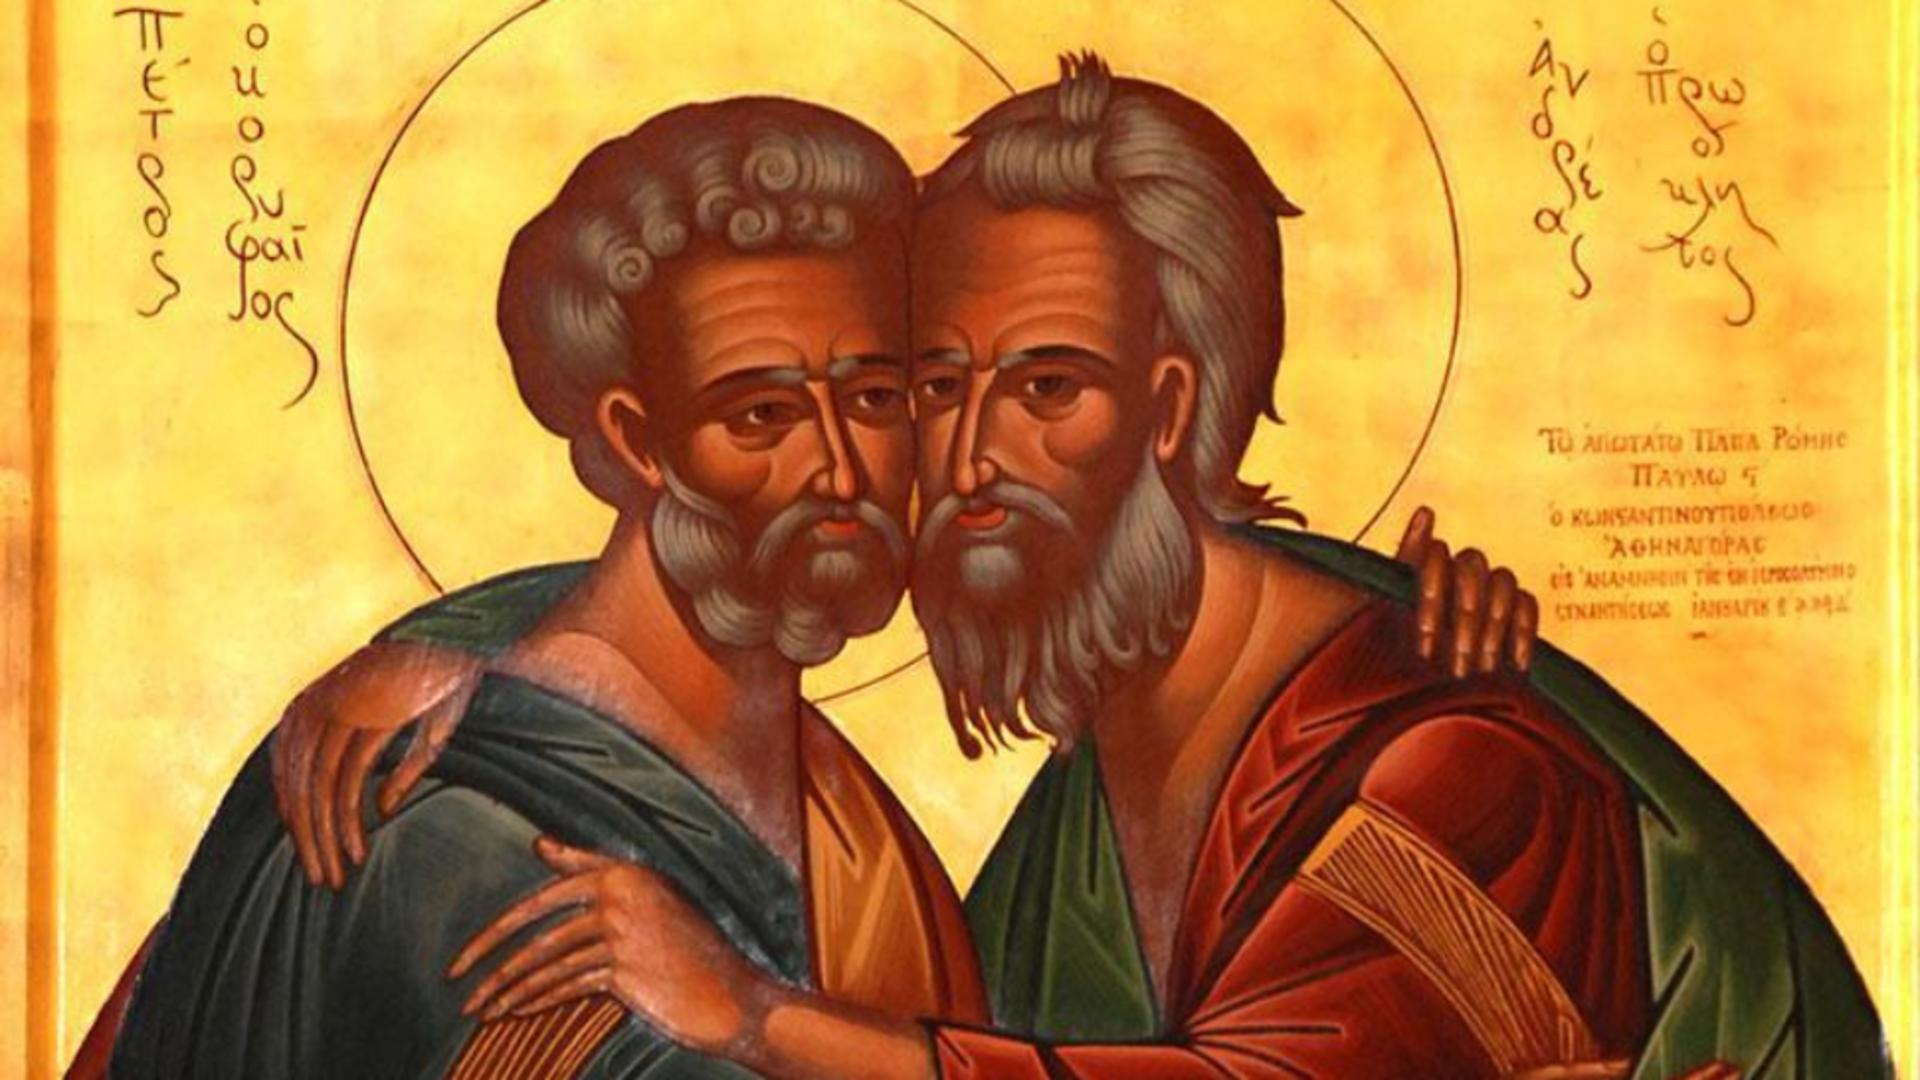 Acatistul Sfinților Apostoli Petru și Pavel, 29 iunie - Transformări profunde dacă îl spui în fiecare zi